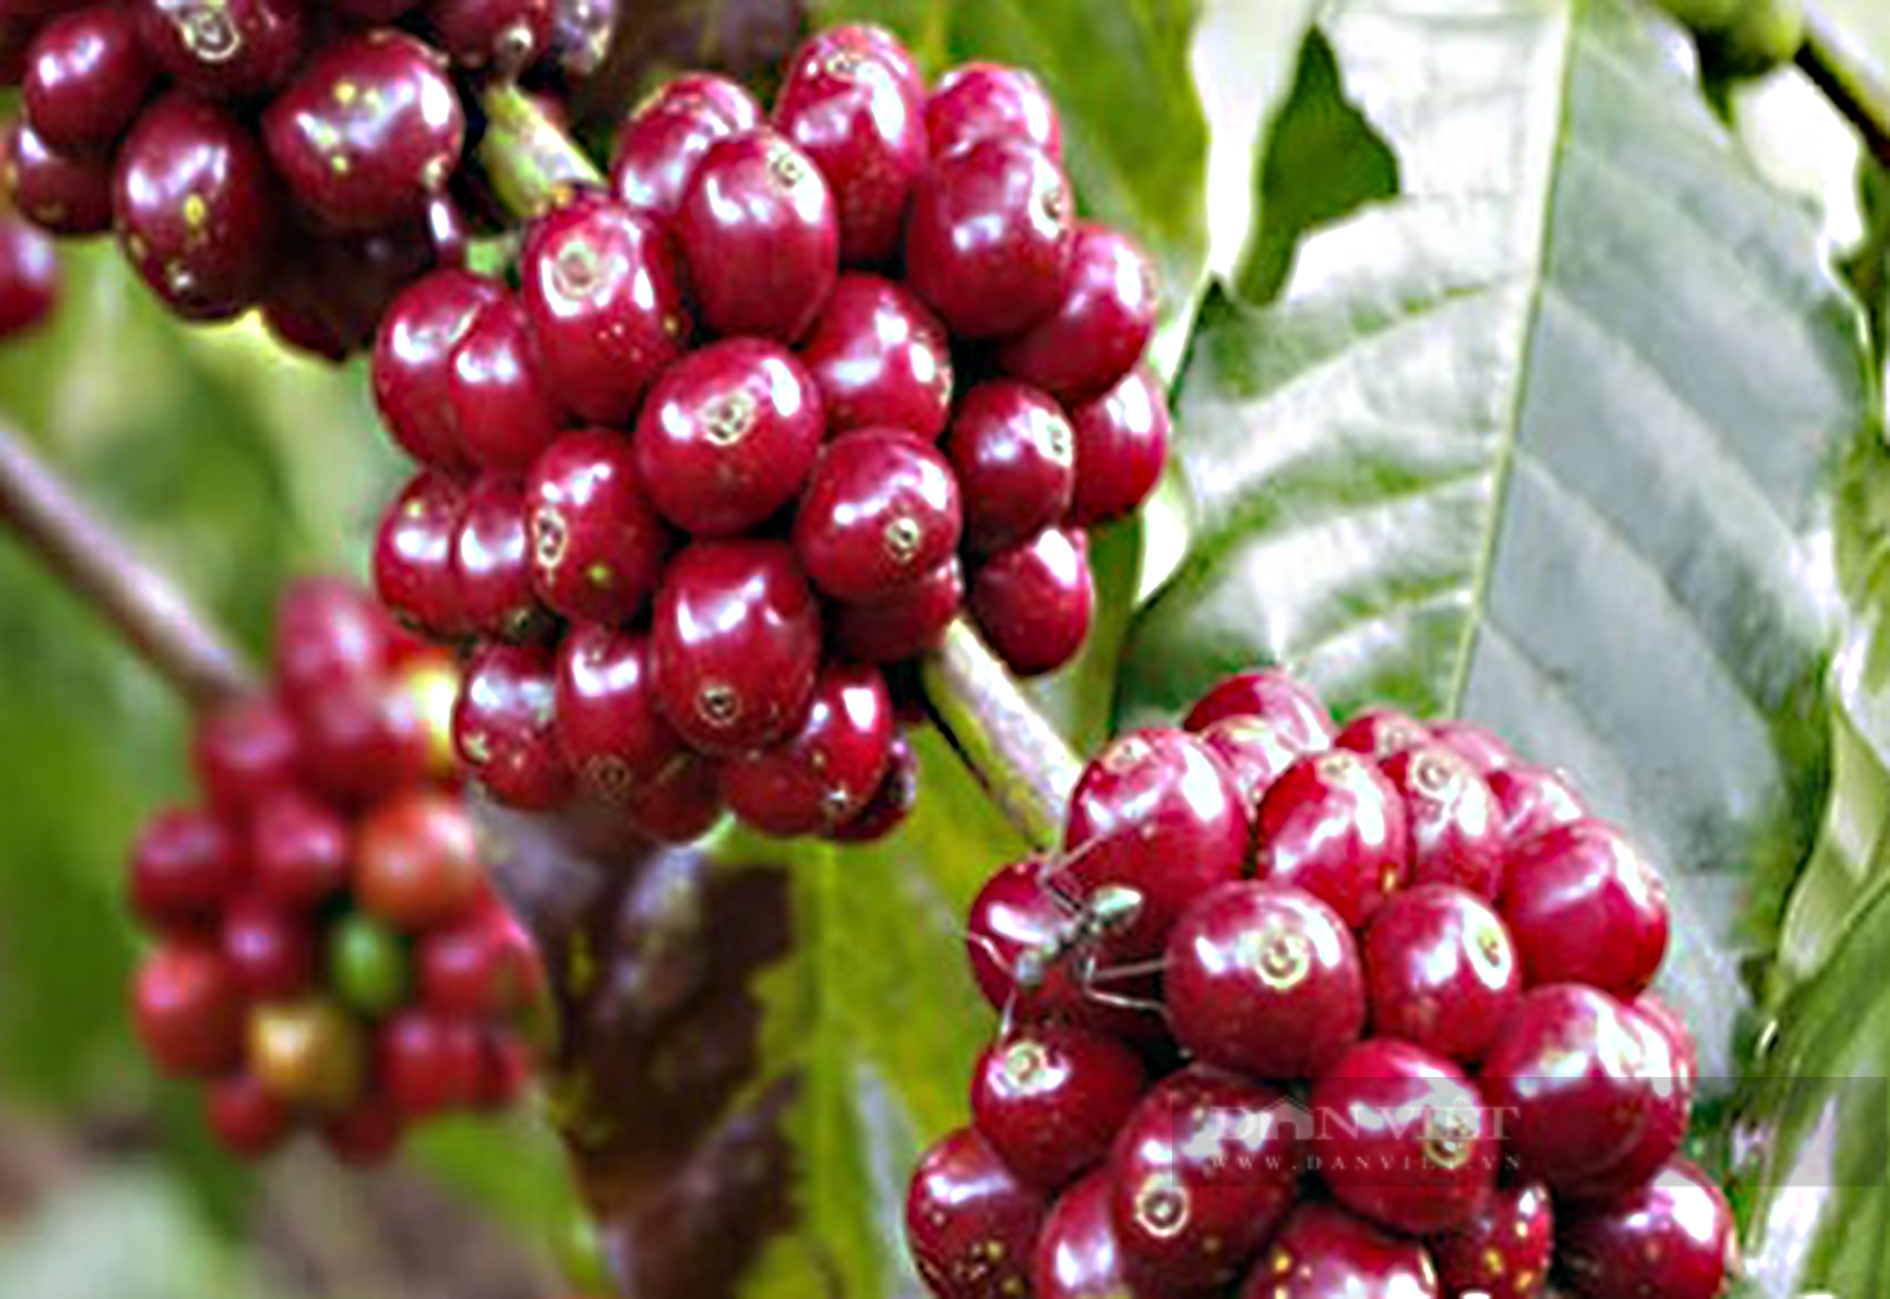 Giá cà phê hôm nay tại Đắk Lắk lùi về lại mốc 41.000 đồng/kg, bí quyết giúp giảm rụng trái cà phê - Ảnh 1.